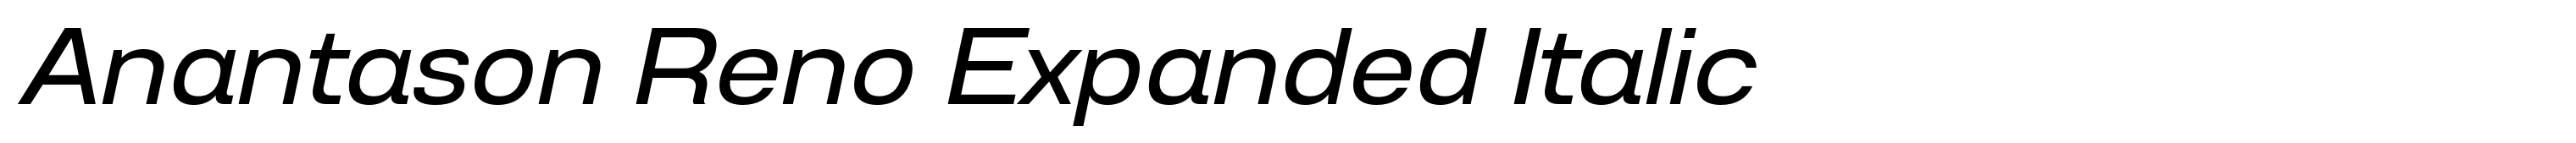 Anantason Reno Expanded Italic